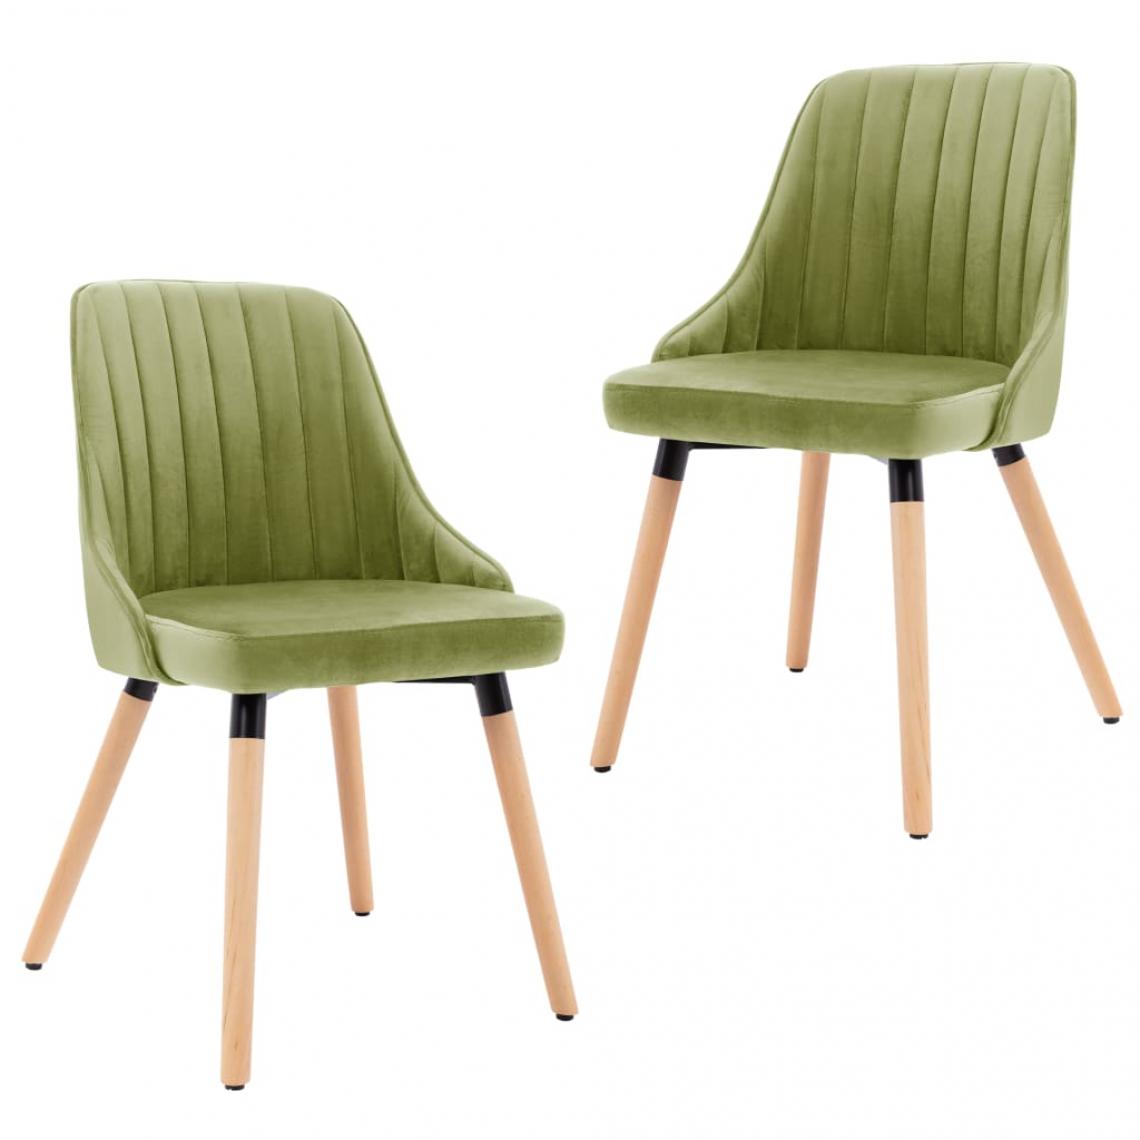 Decoshop26 - Lot de 2 chaises de salle à manger cuisine design moderne velours vert clair CDS021077 - Chaises